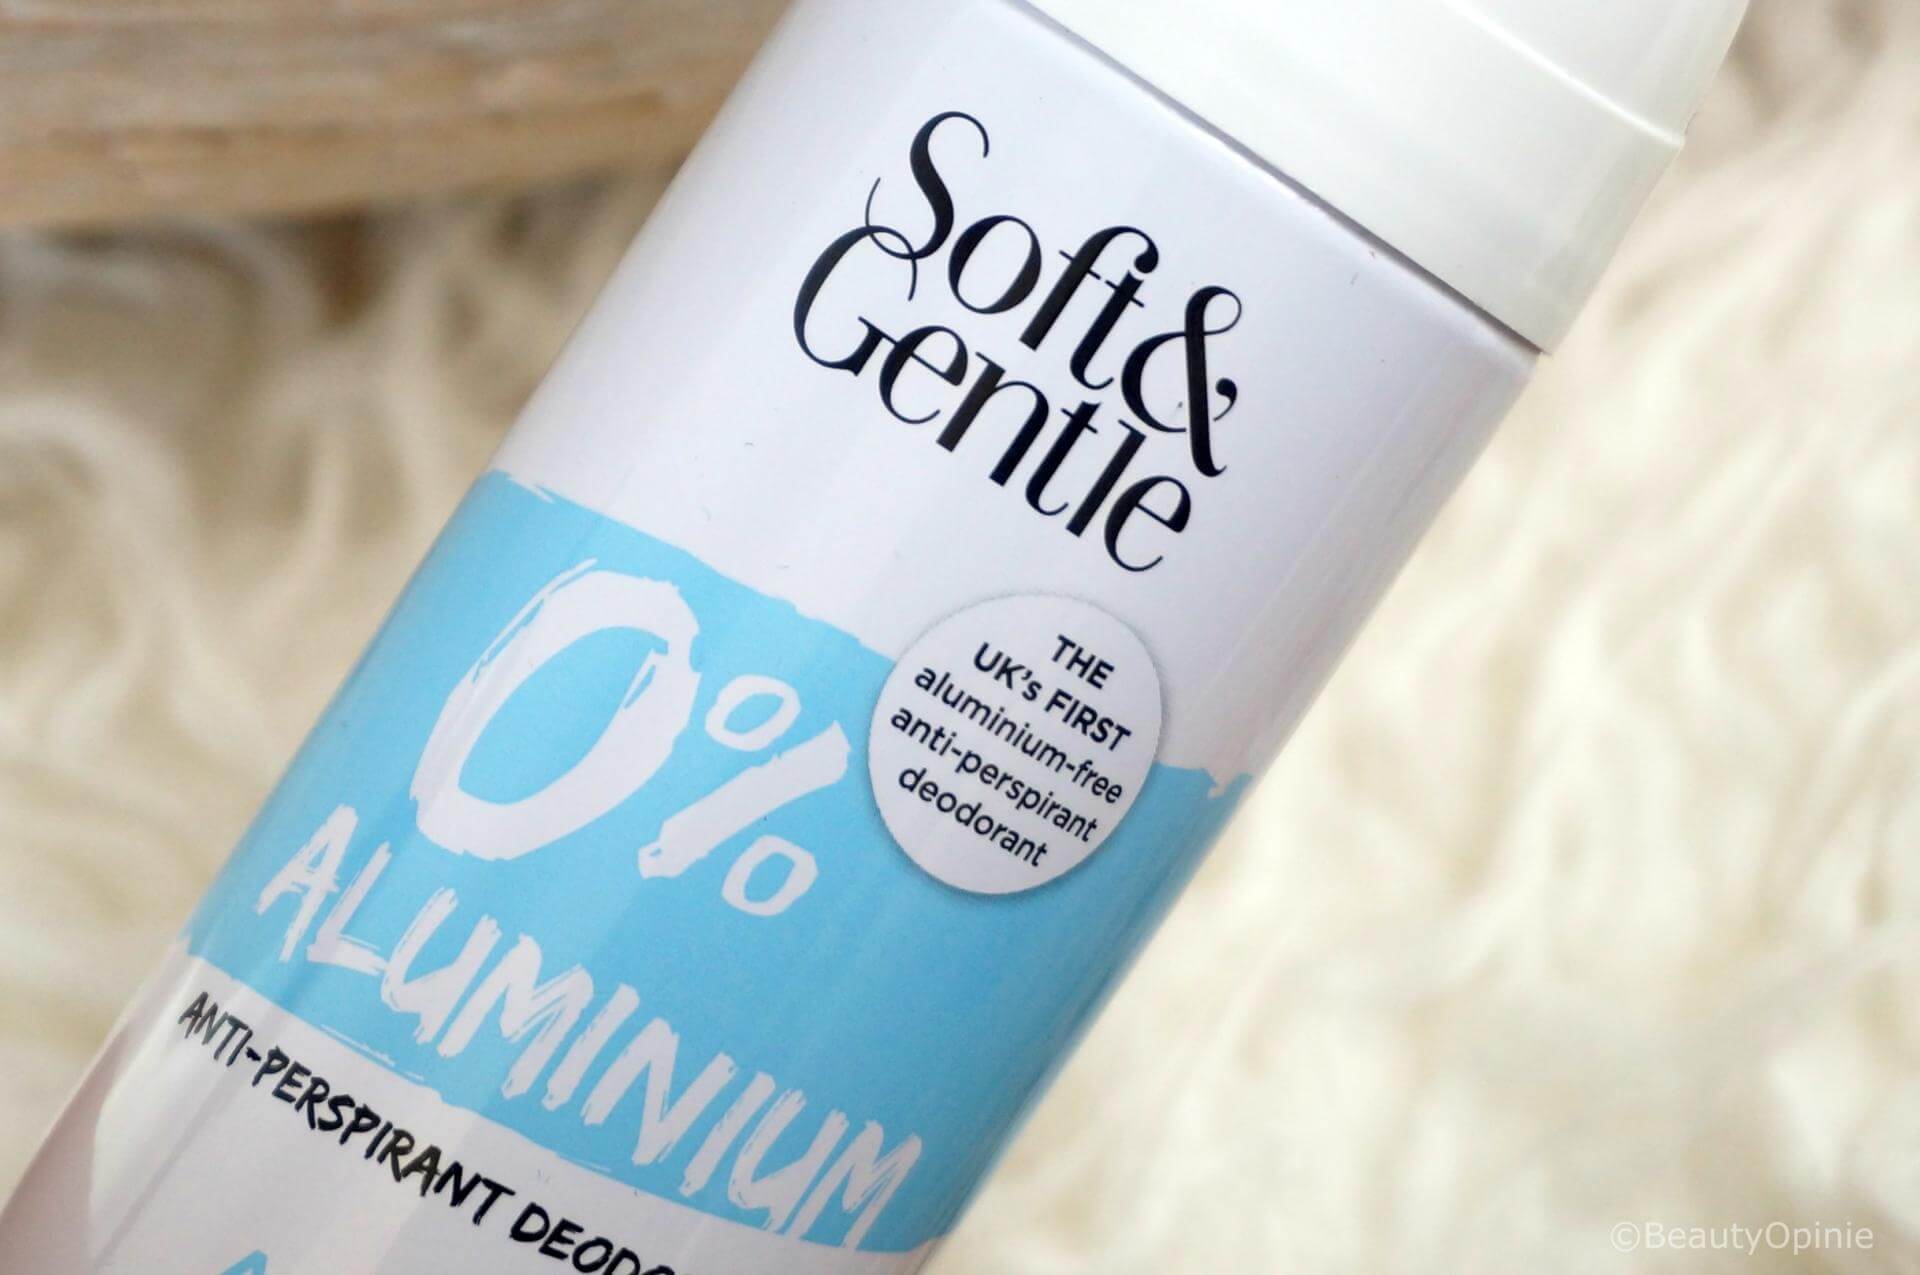 Soft & Gentle deodorant zonder aluminium